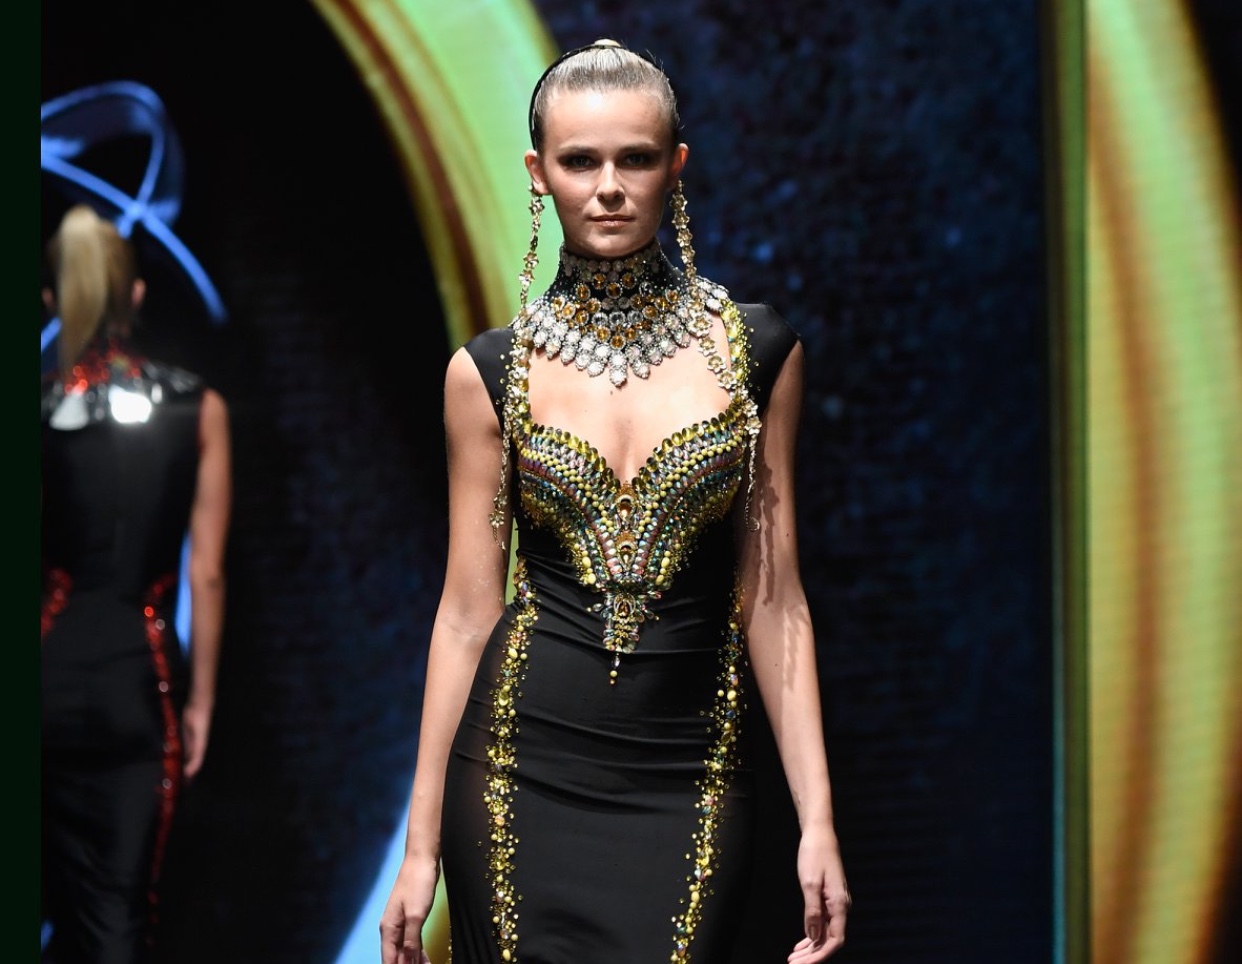 Un mannequin défile lors de la Cosmopolitan Fashion Week dans une robe glamour noire et dorée.